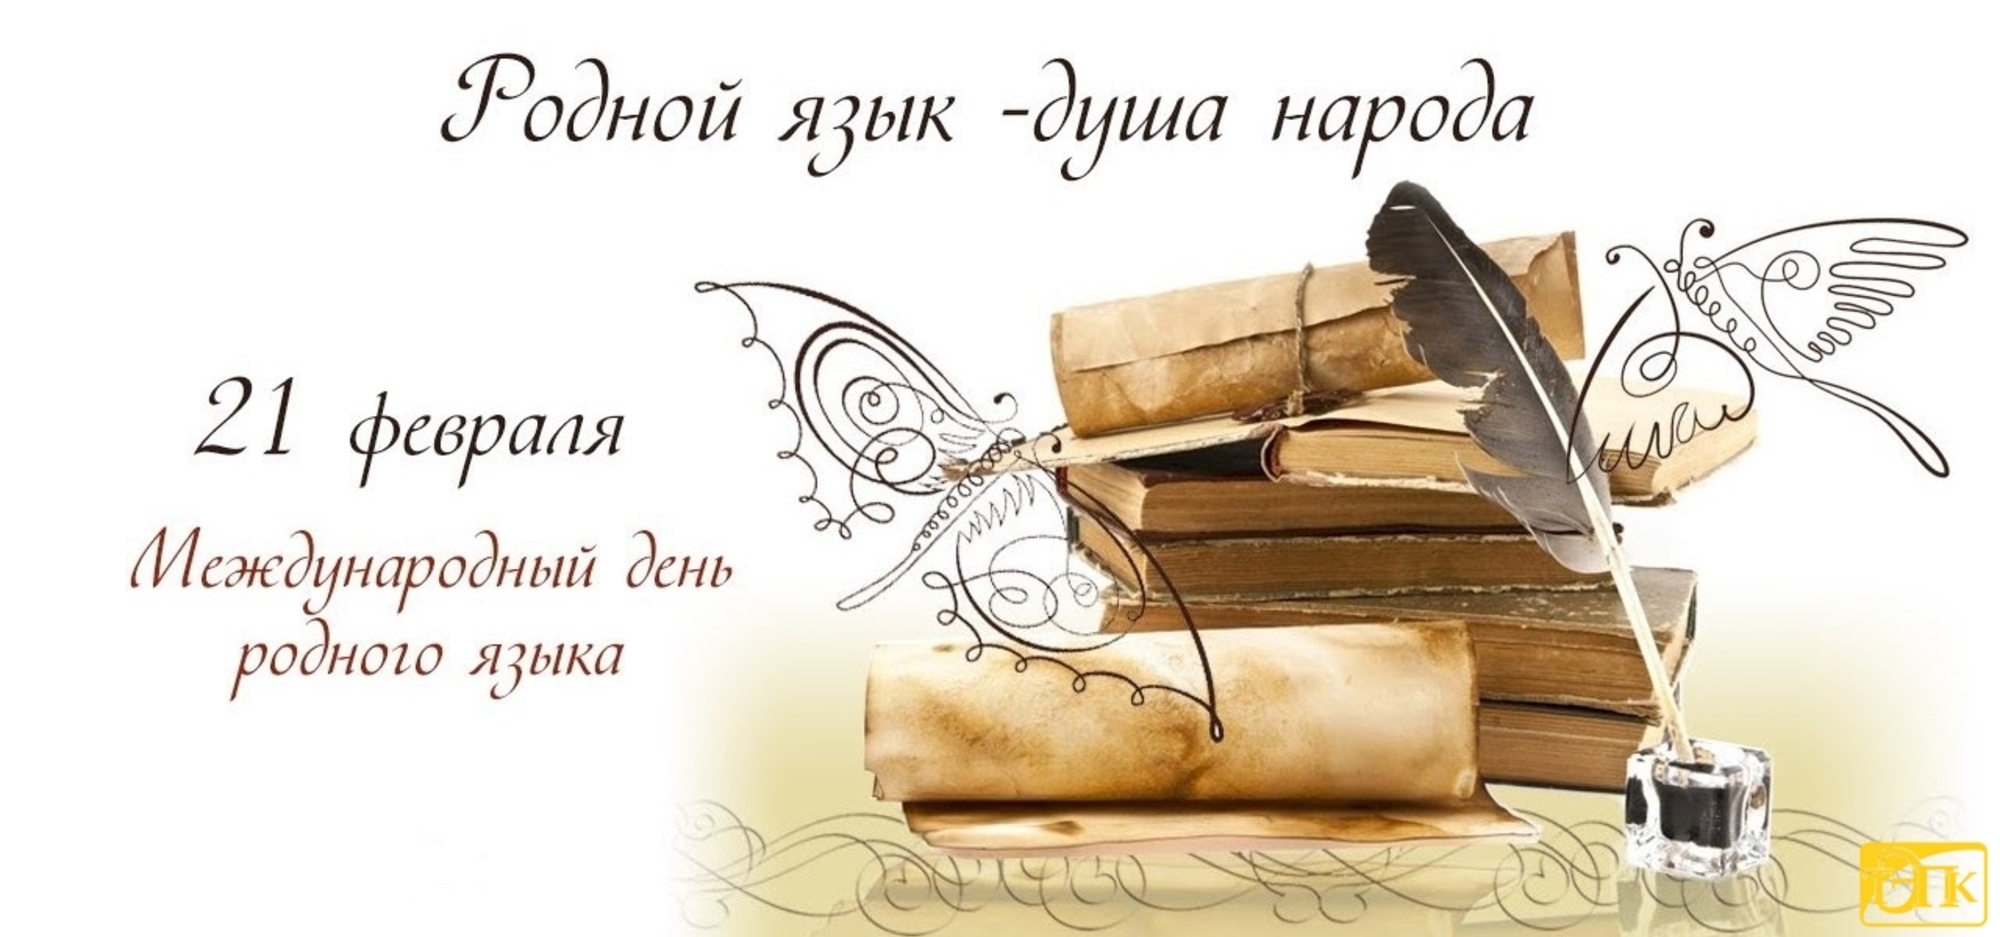 Центр культуры народов России приглашает на Национальные чтения «О сколько в этом слове...»